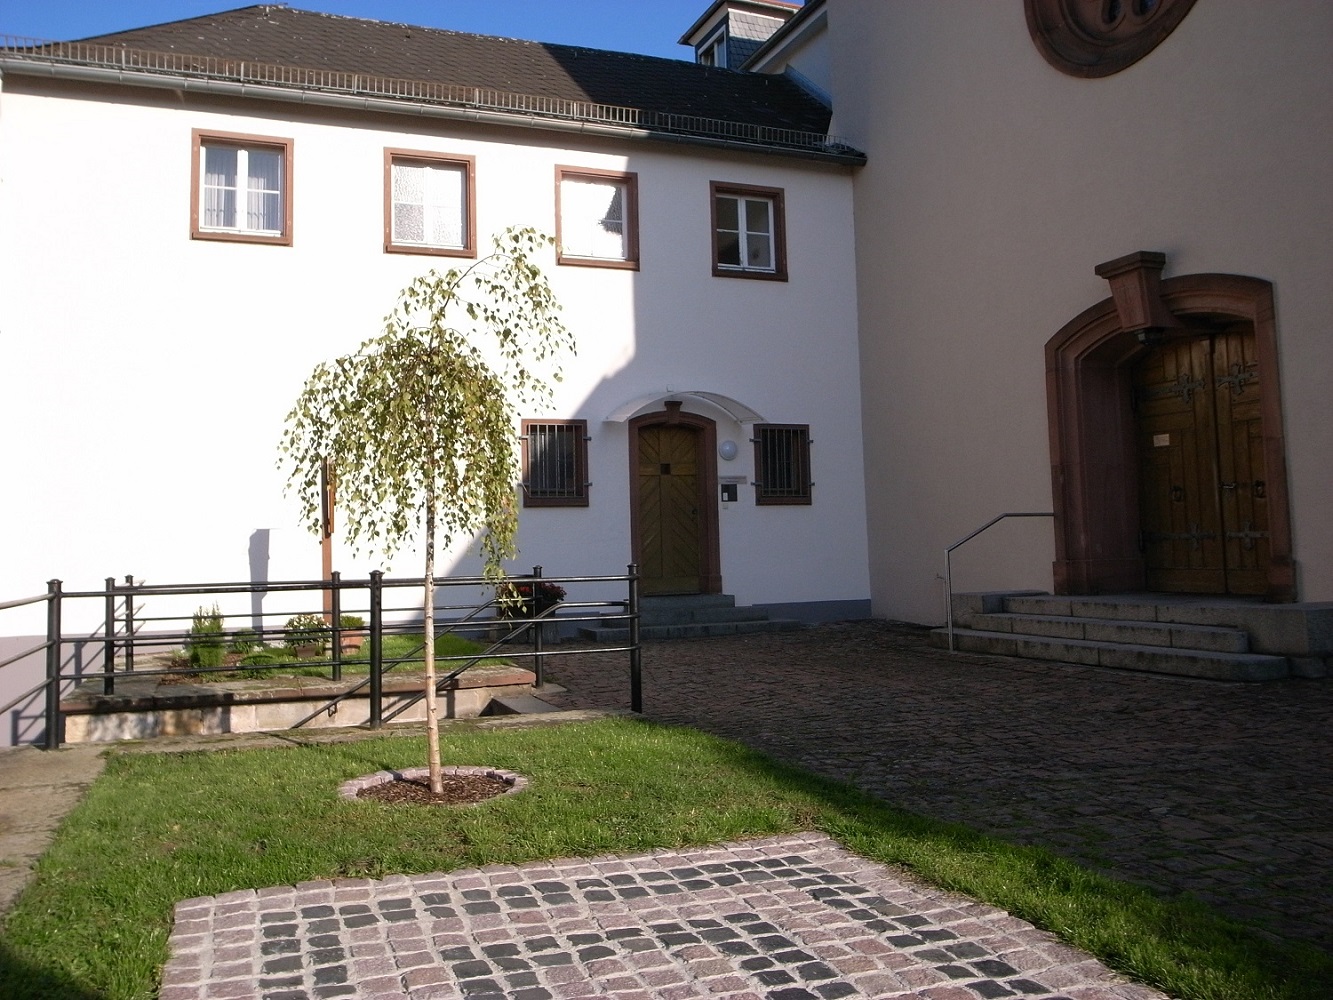 Franziskanerkloster Bensheim, Vorplatz mit Pforte (c) Franziskaner Bensheim